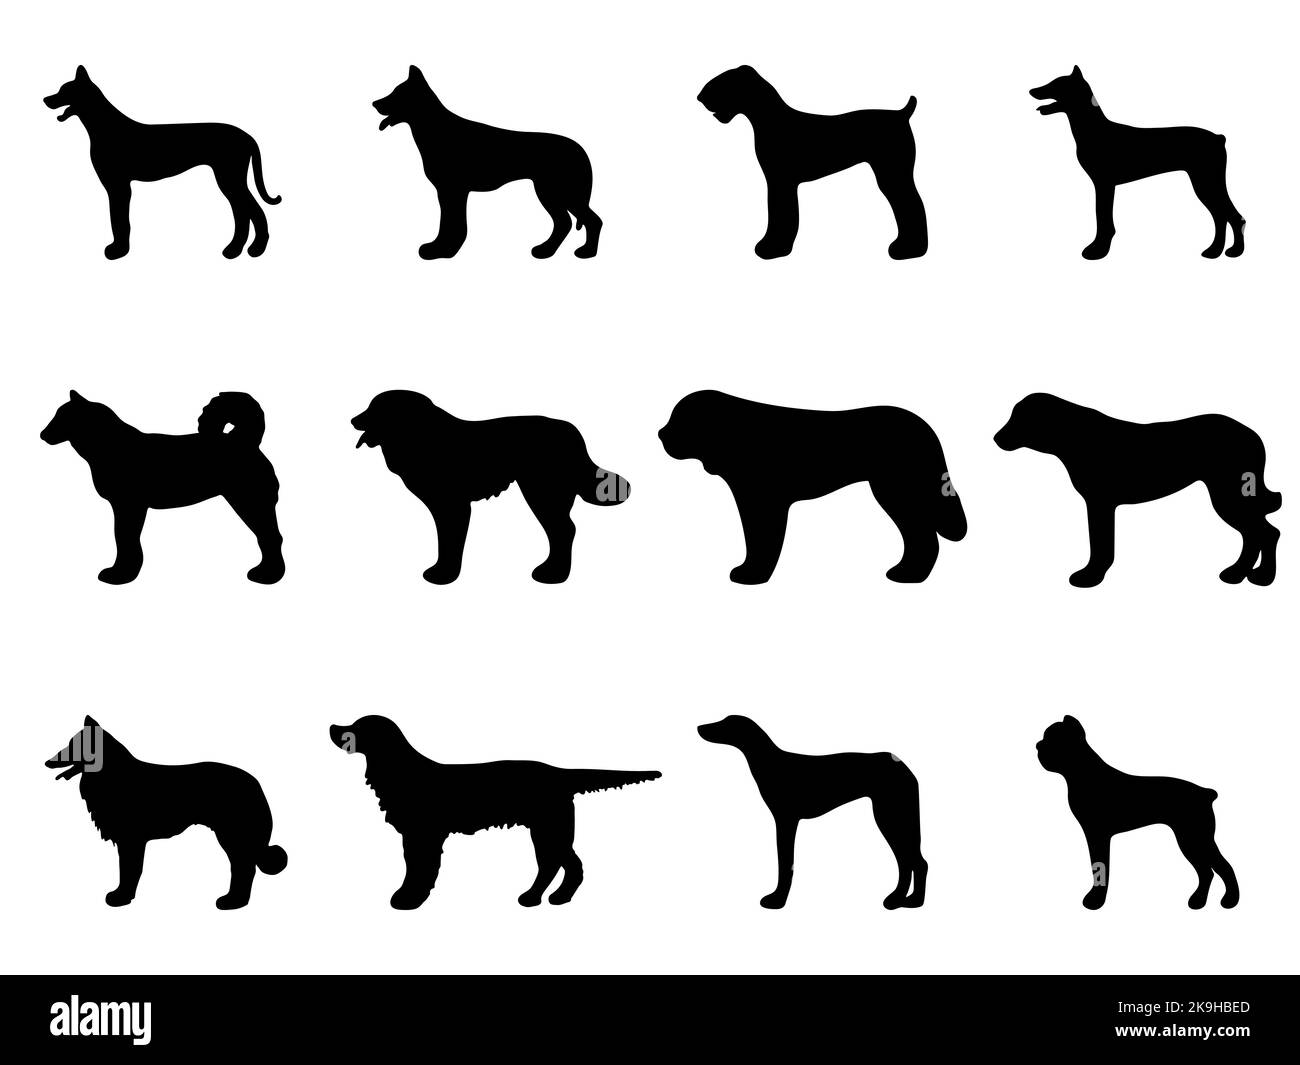 ensemble silhouette de chien. Silhouettes noires d'un chien sur fond blanc. Illustration vectorielle Illustration de Vecteur